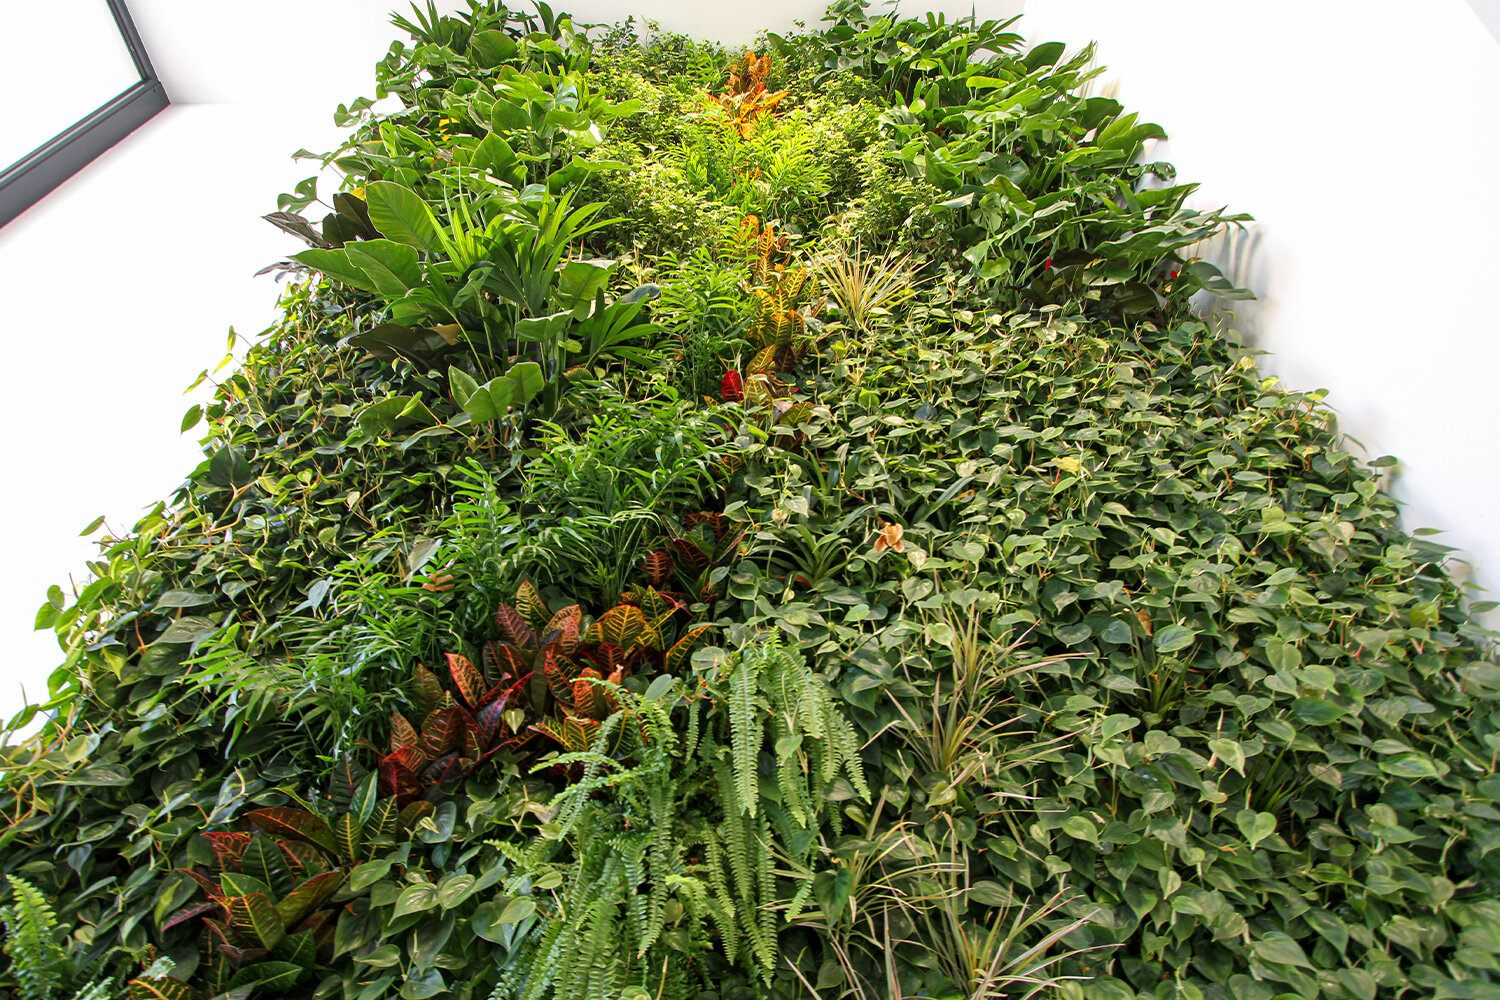 packaging-garden-vertical-wall-green-sundar-italia-008.jpg